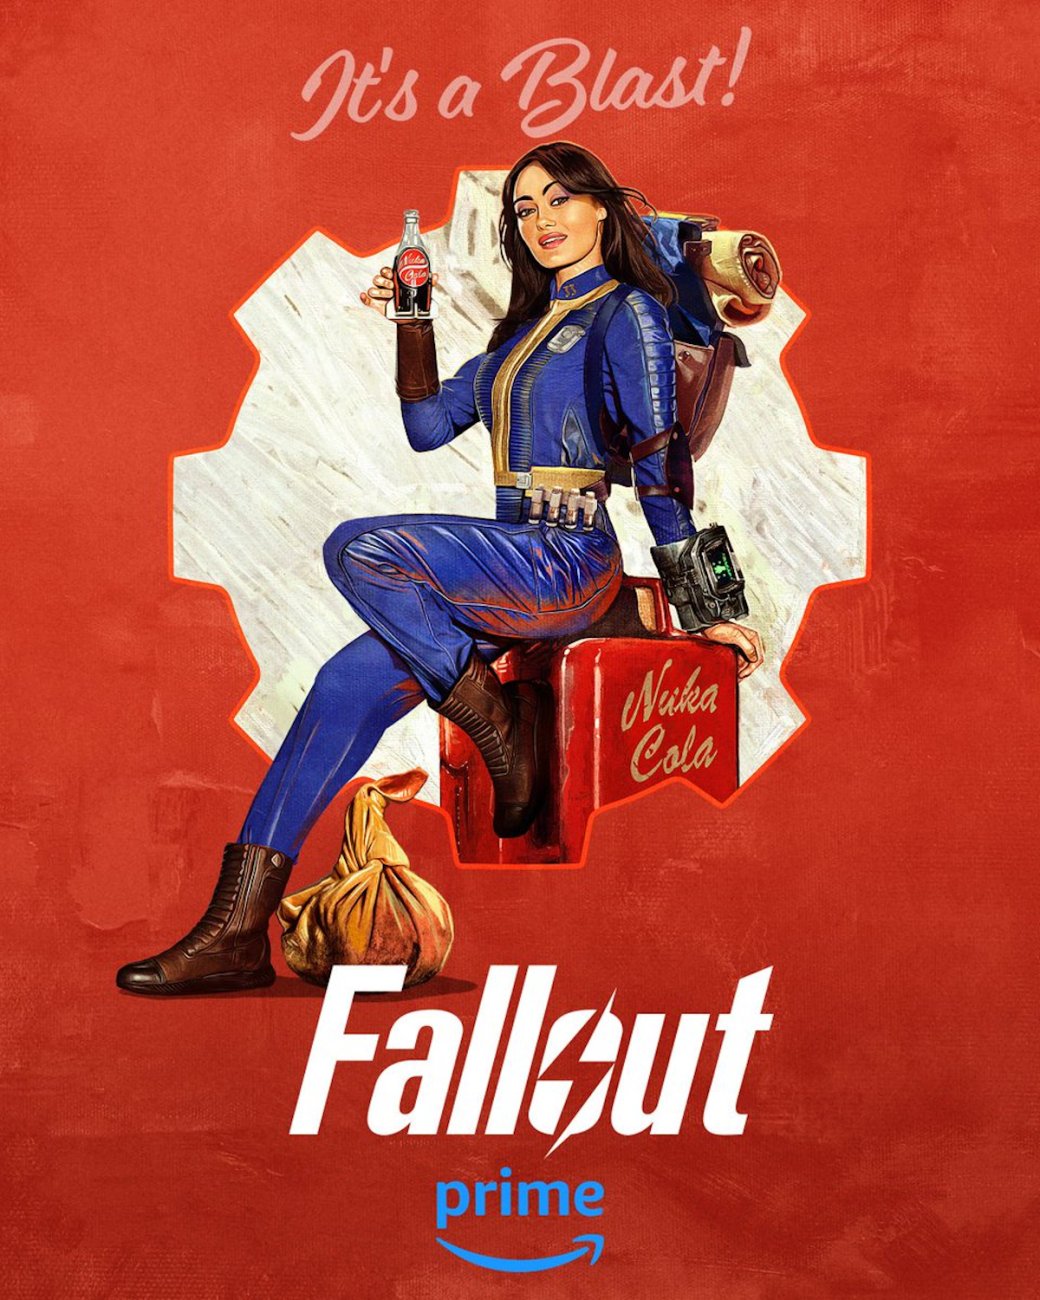 Галерея Amazon показала красочные постеры сериала Fallout с ключевыми героями - 3 фото